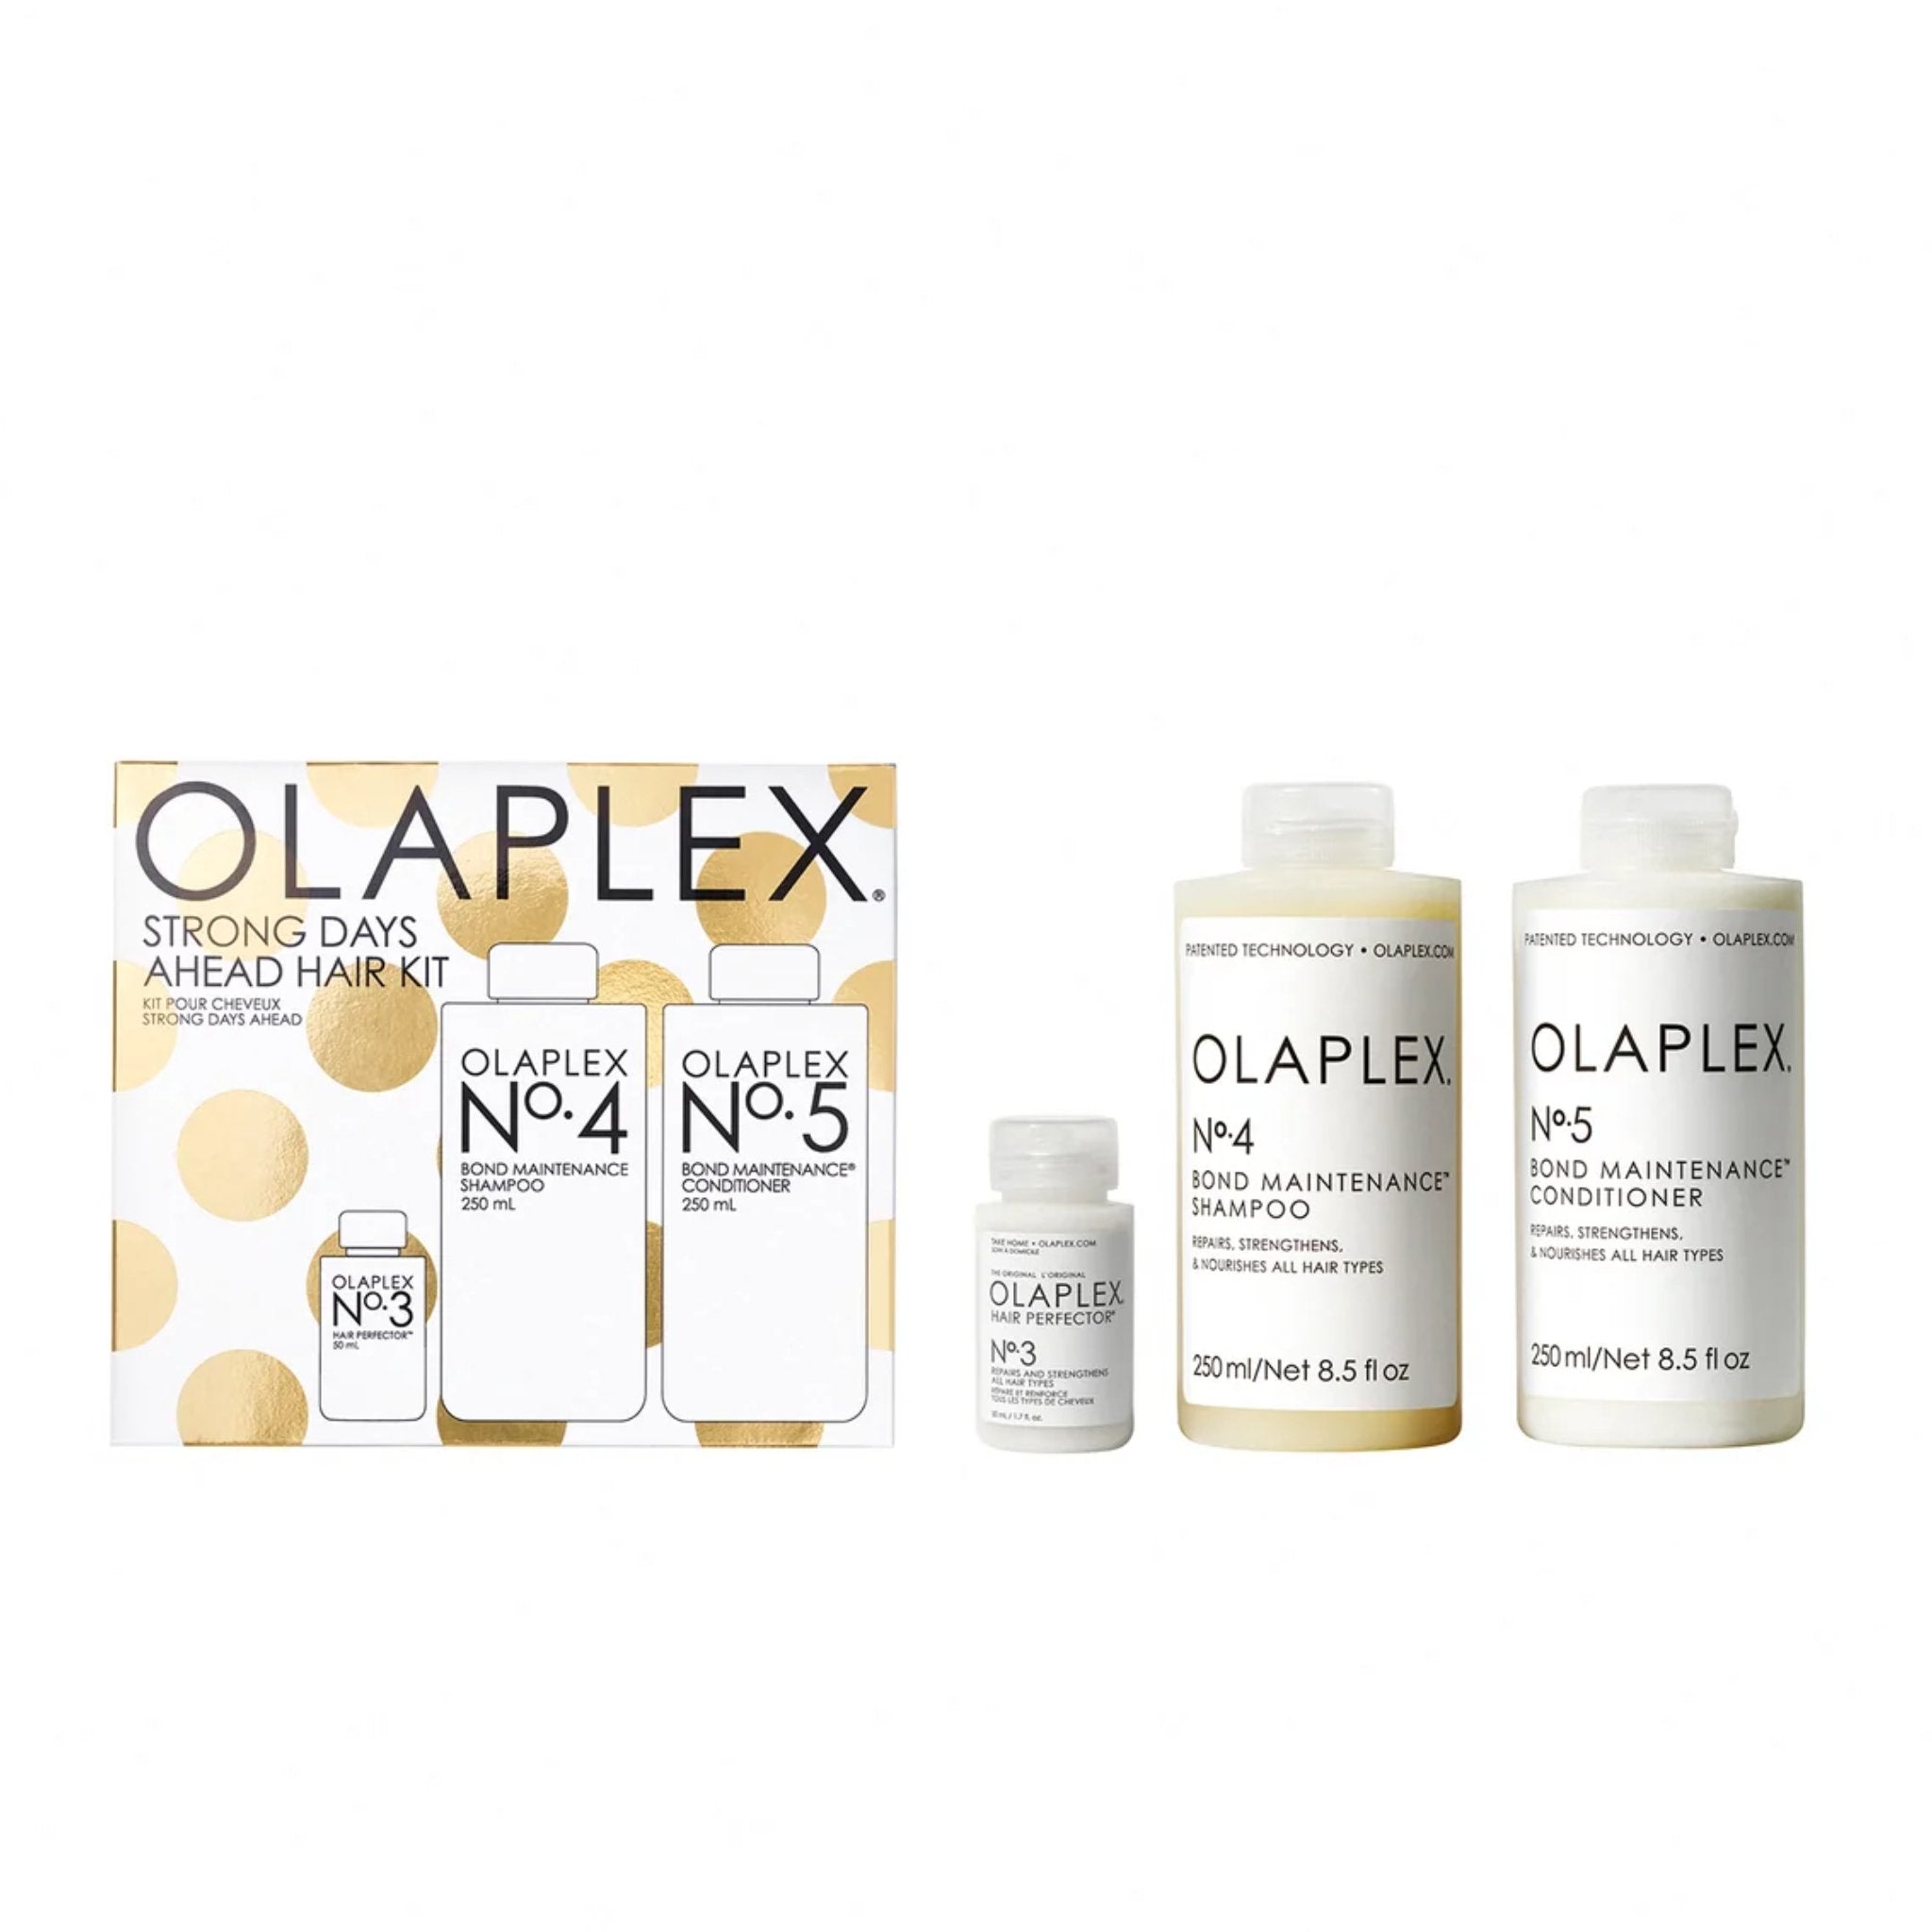 Olaplex. Coffret Strong Days Ahead - Concept C. Shop